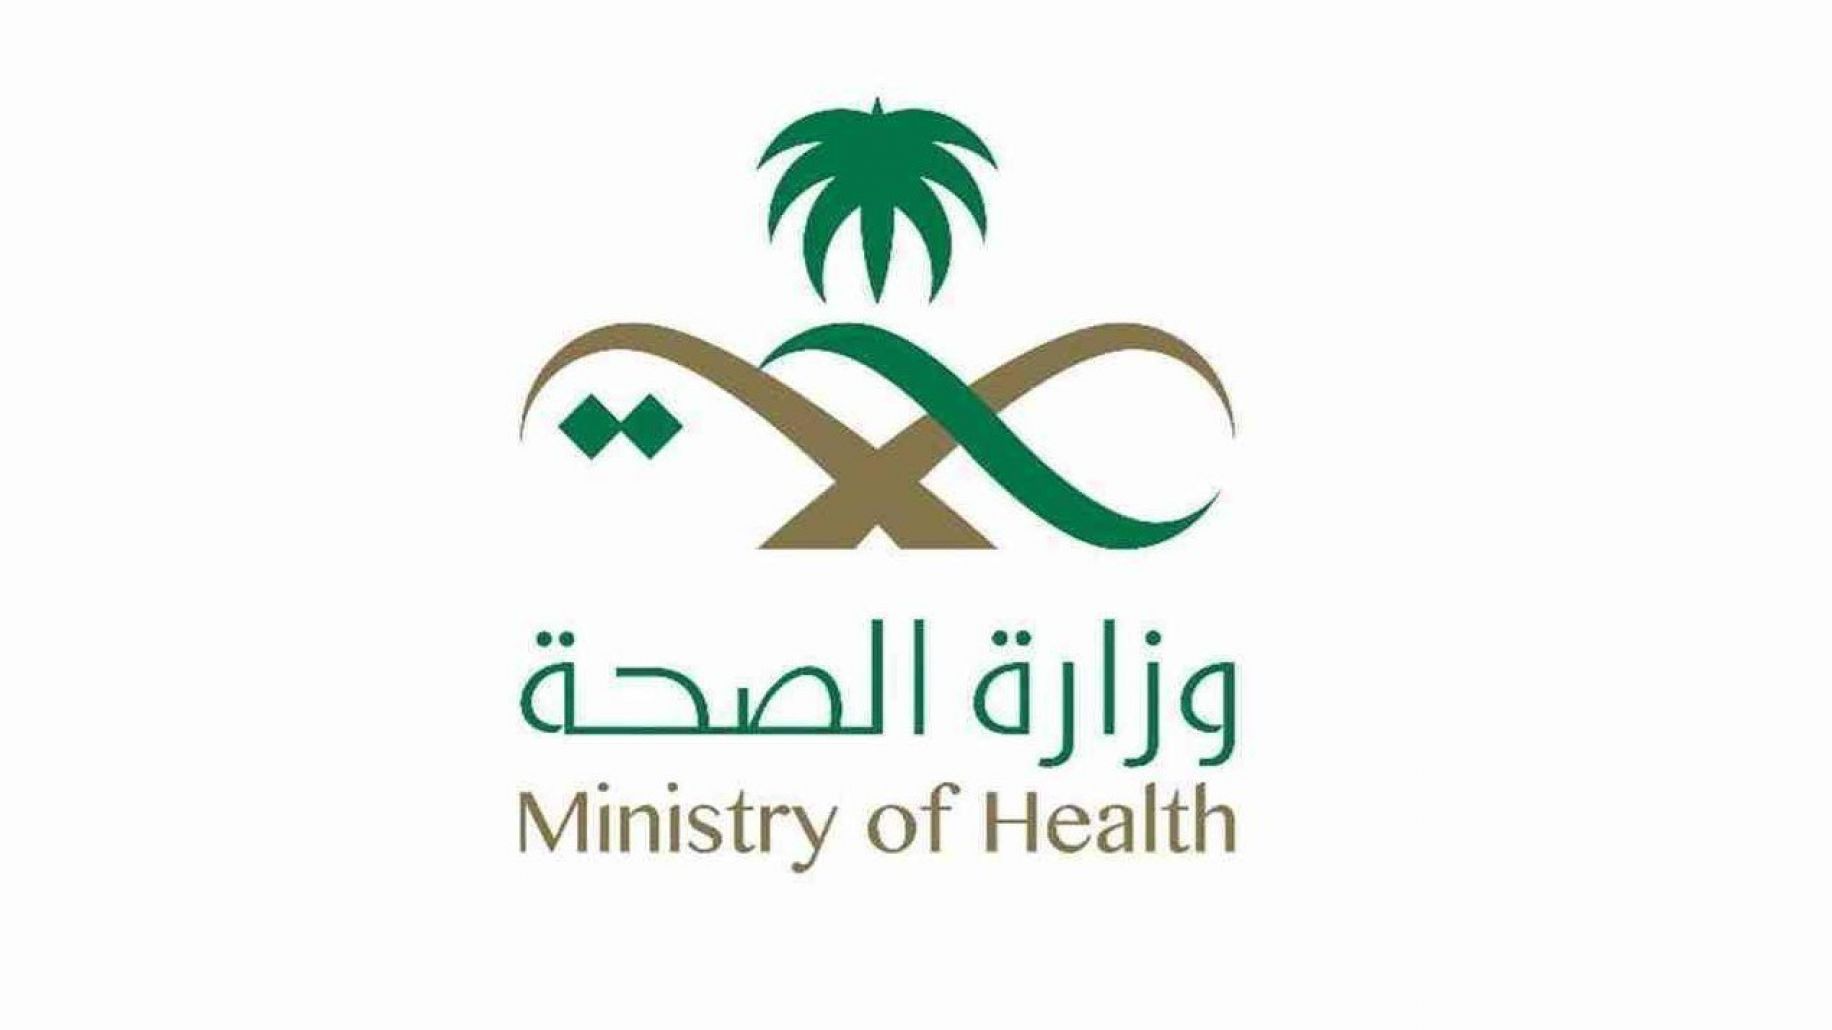 التقديم في وظائف وزارة الصحة السعودية وما هي الشروط اللازمة للتقديم